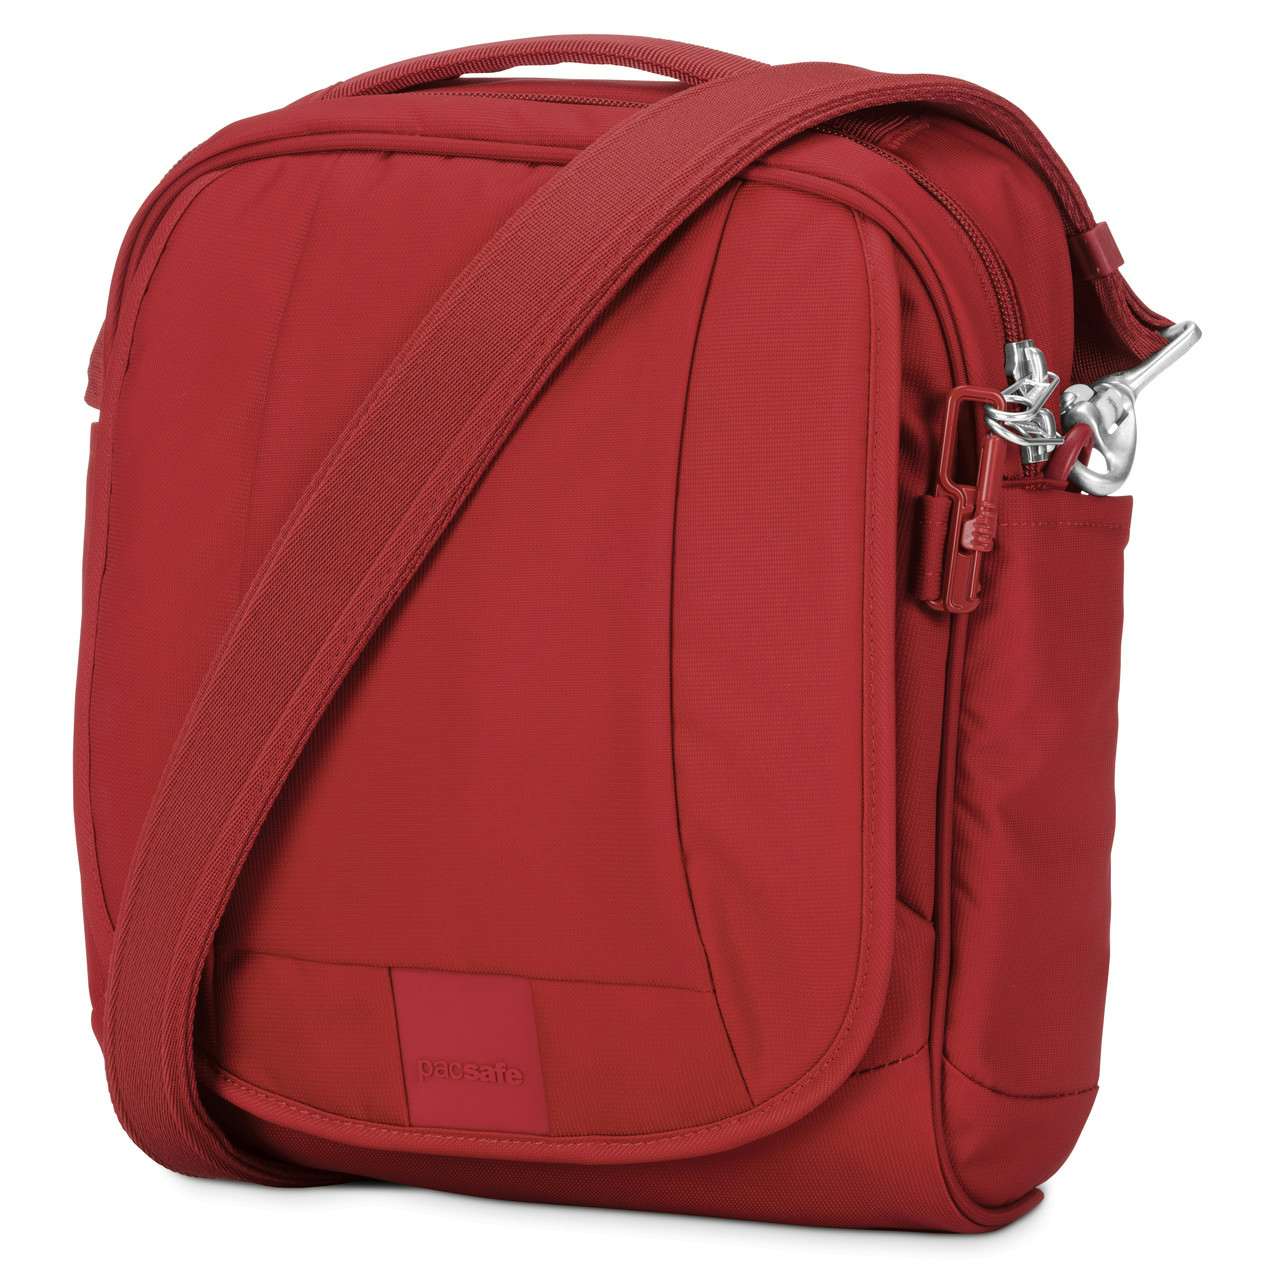 Metrosafe LS200 Anti-Theft Shoulder Bag Vintage Red